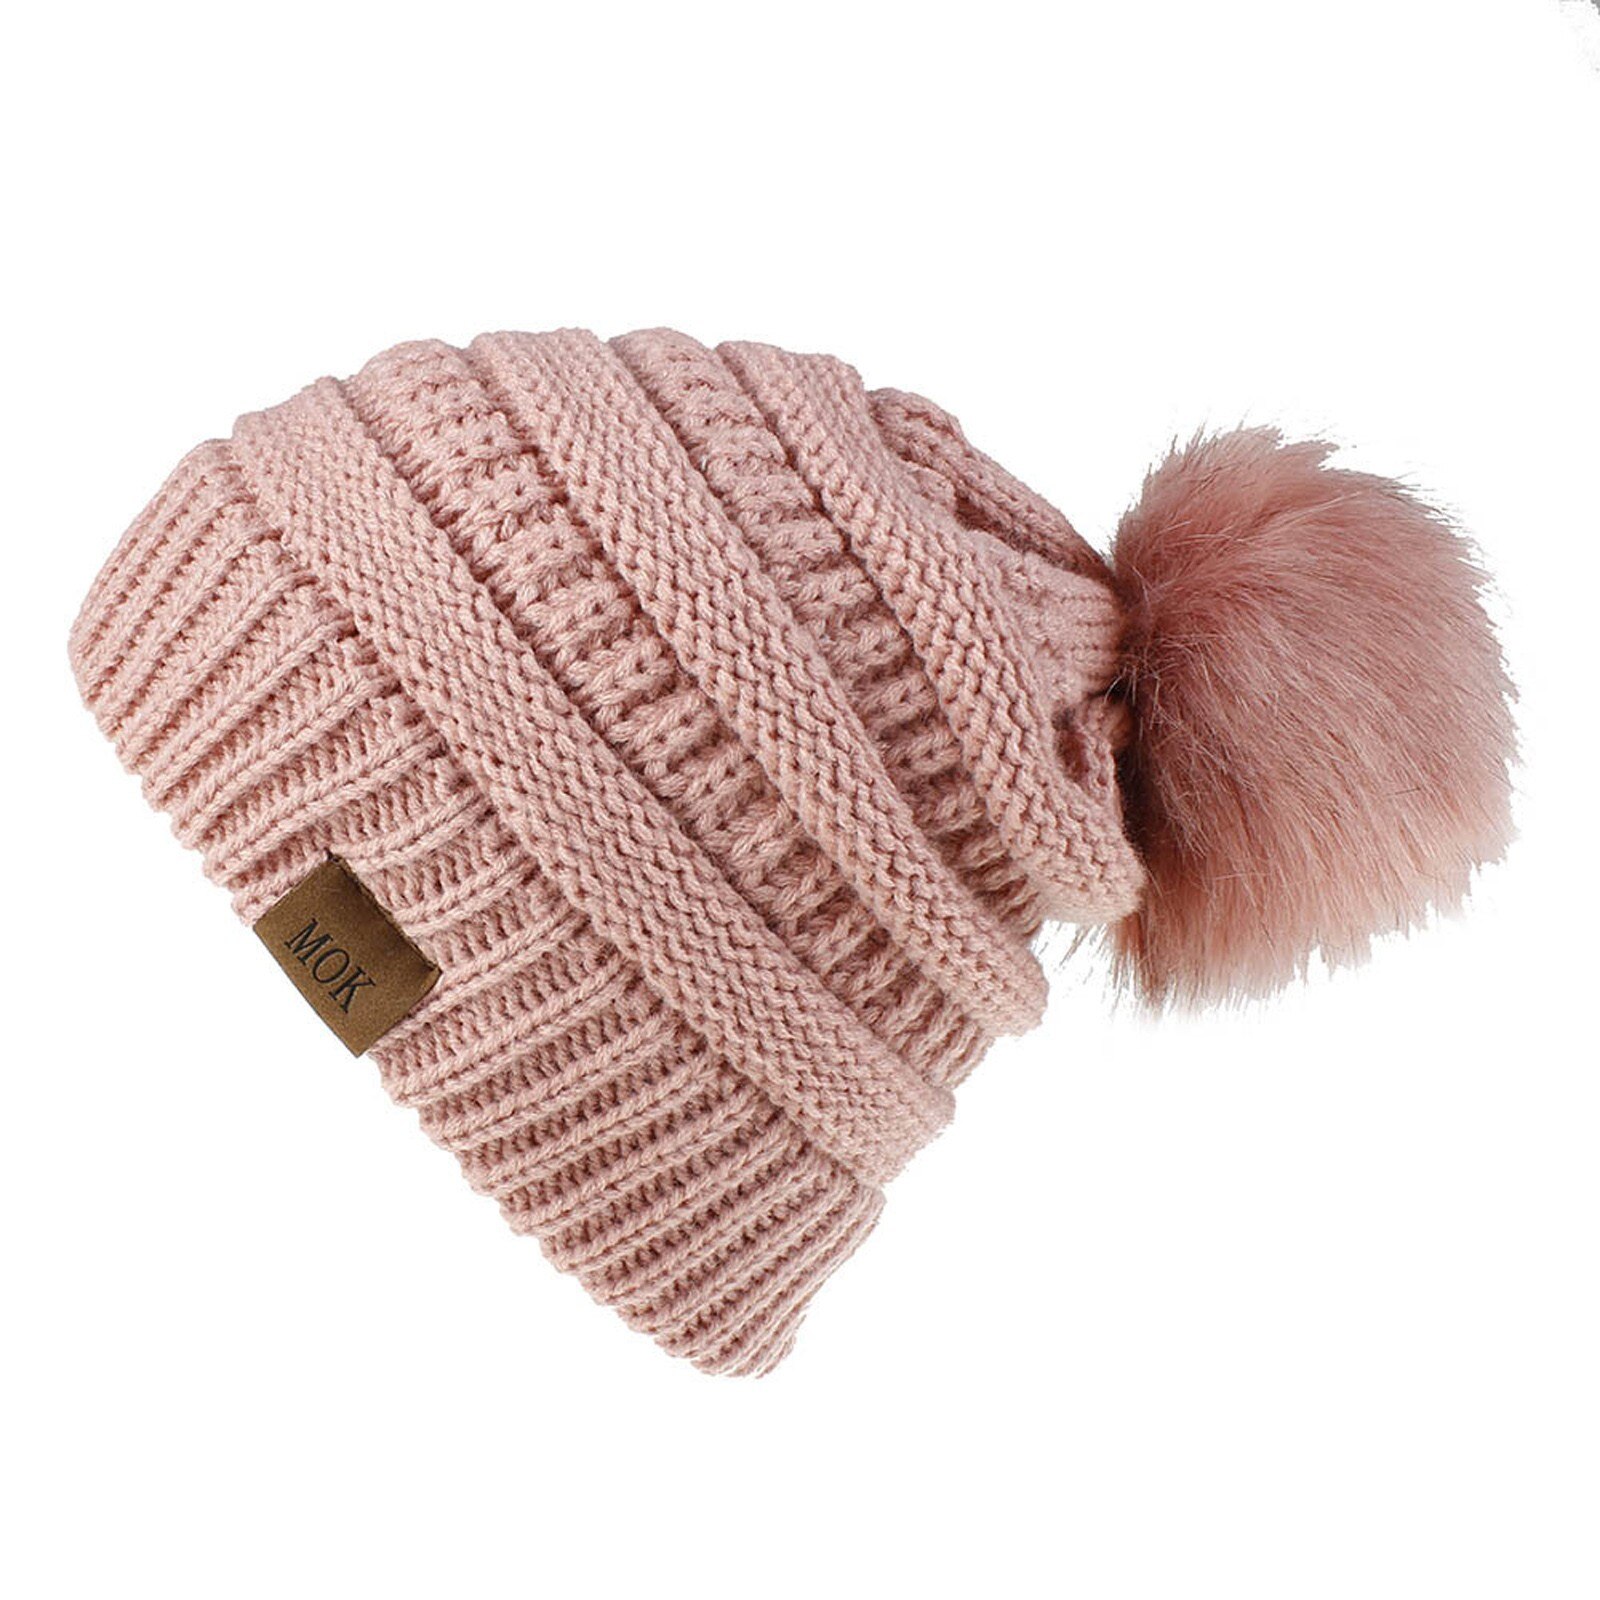 E la moda donna nuova E di alta qualità mantiene caldi cappelli invernali cappello a orlo in lana lavorato a maglia morbido delicato sulla pelle, traspirante: PK